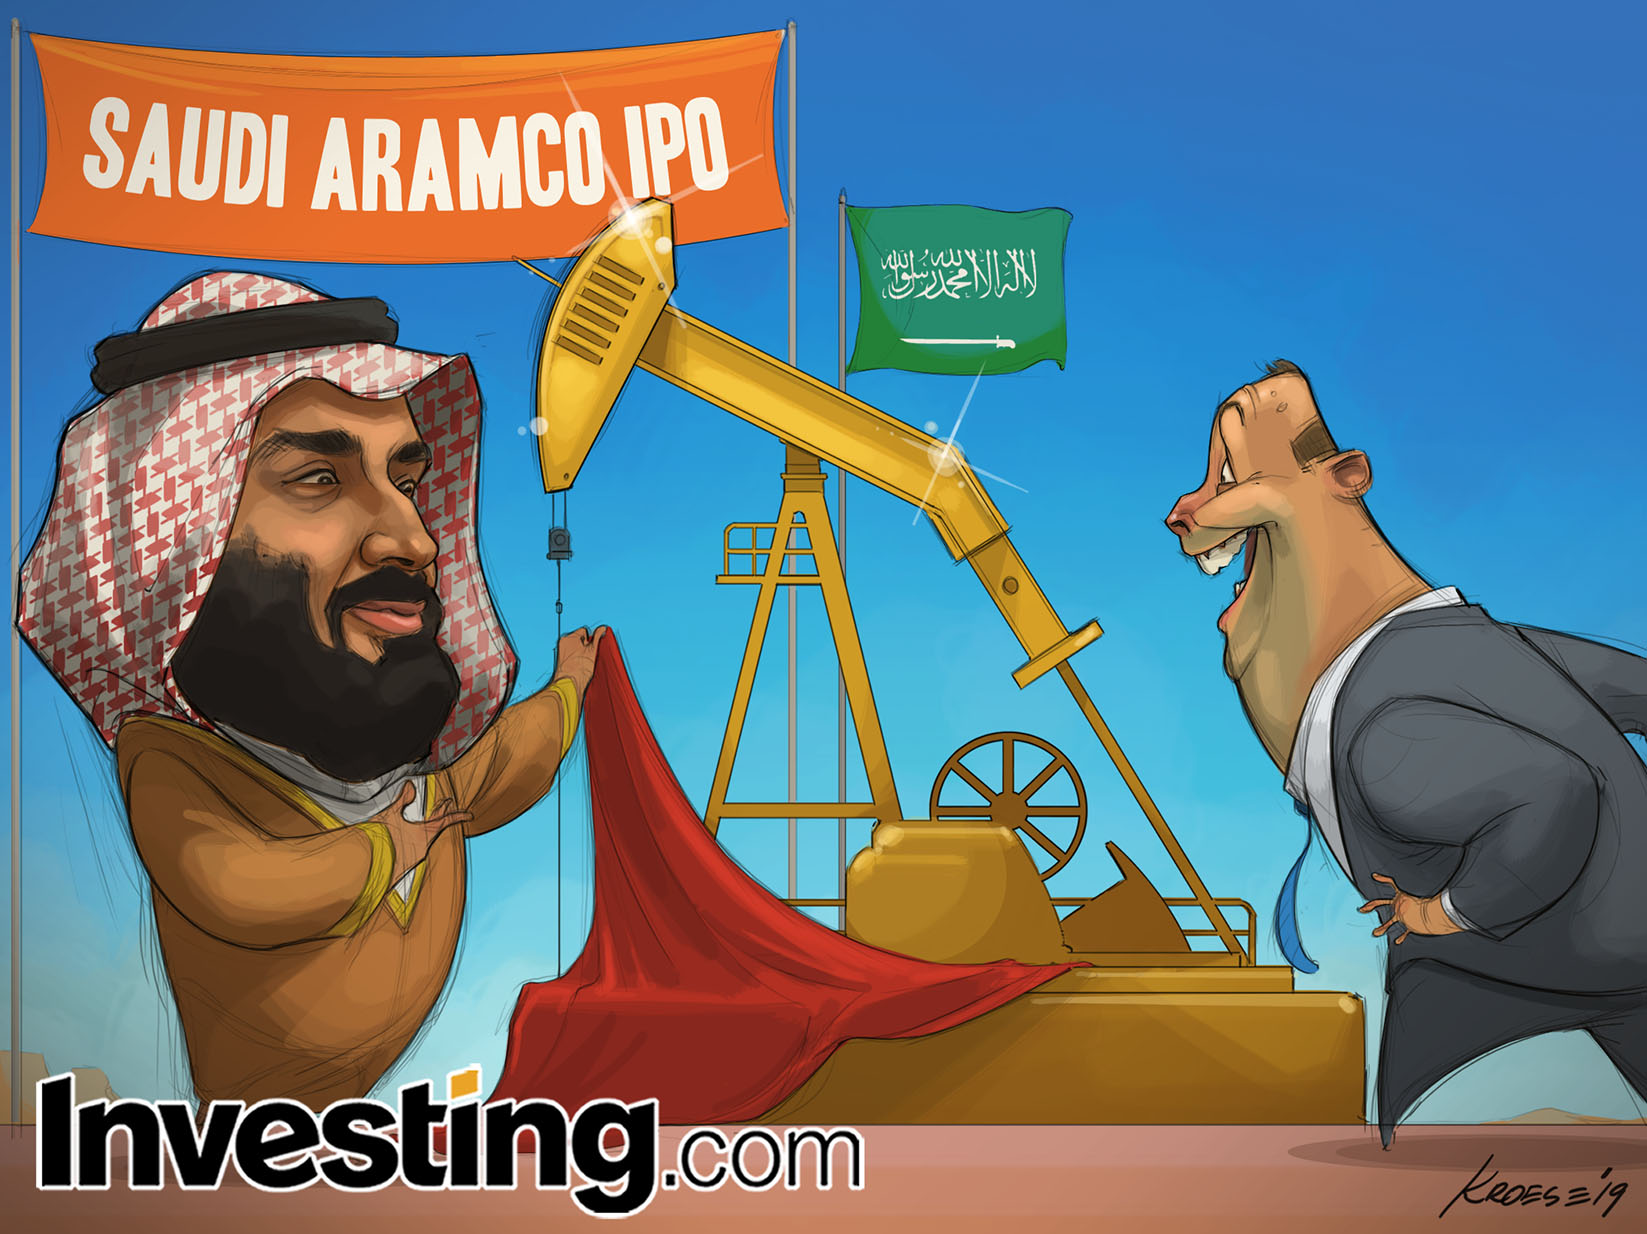 أرامكو السعودية تستعد لطرحها الأولي لتصبح الشركة العامة الأكثر قيمة في العالم